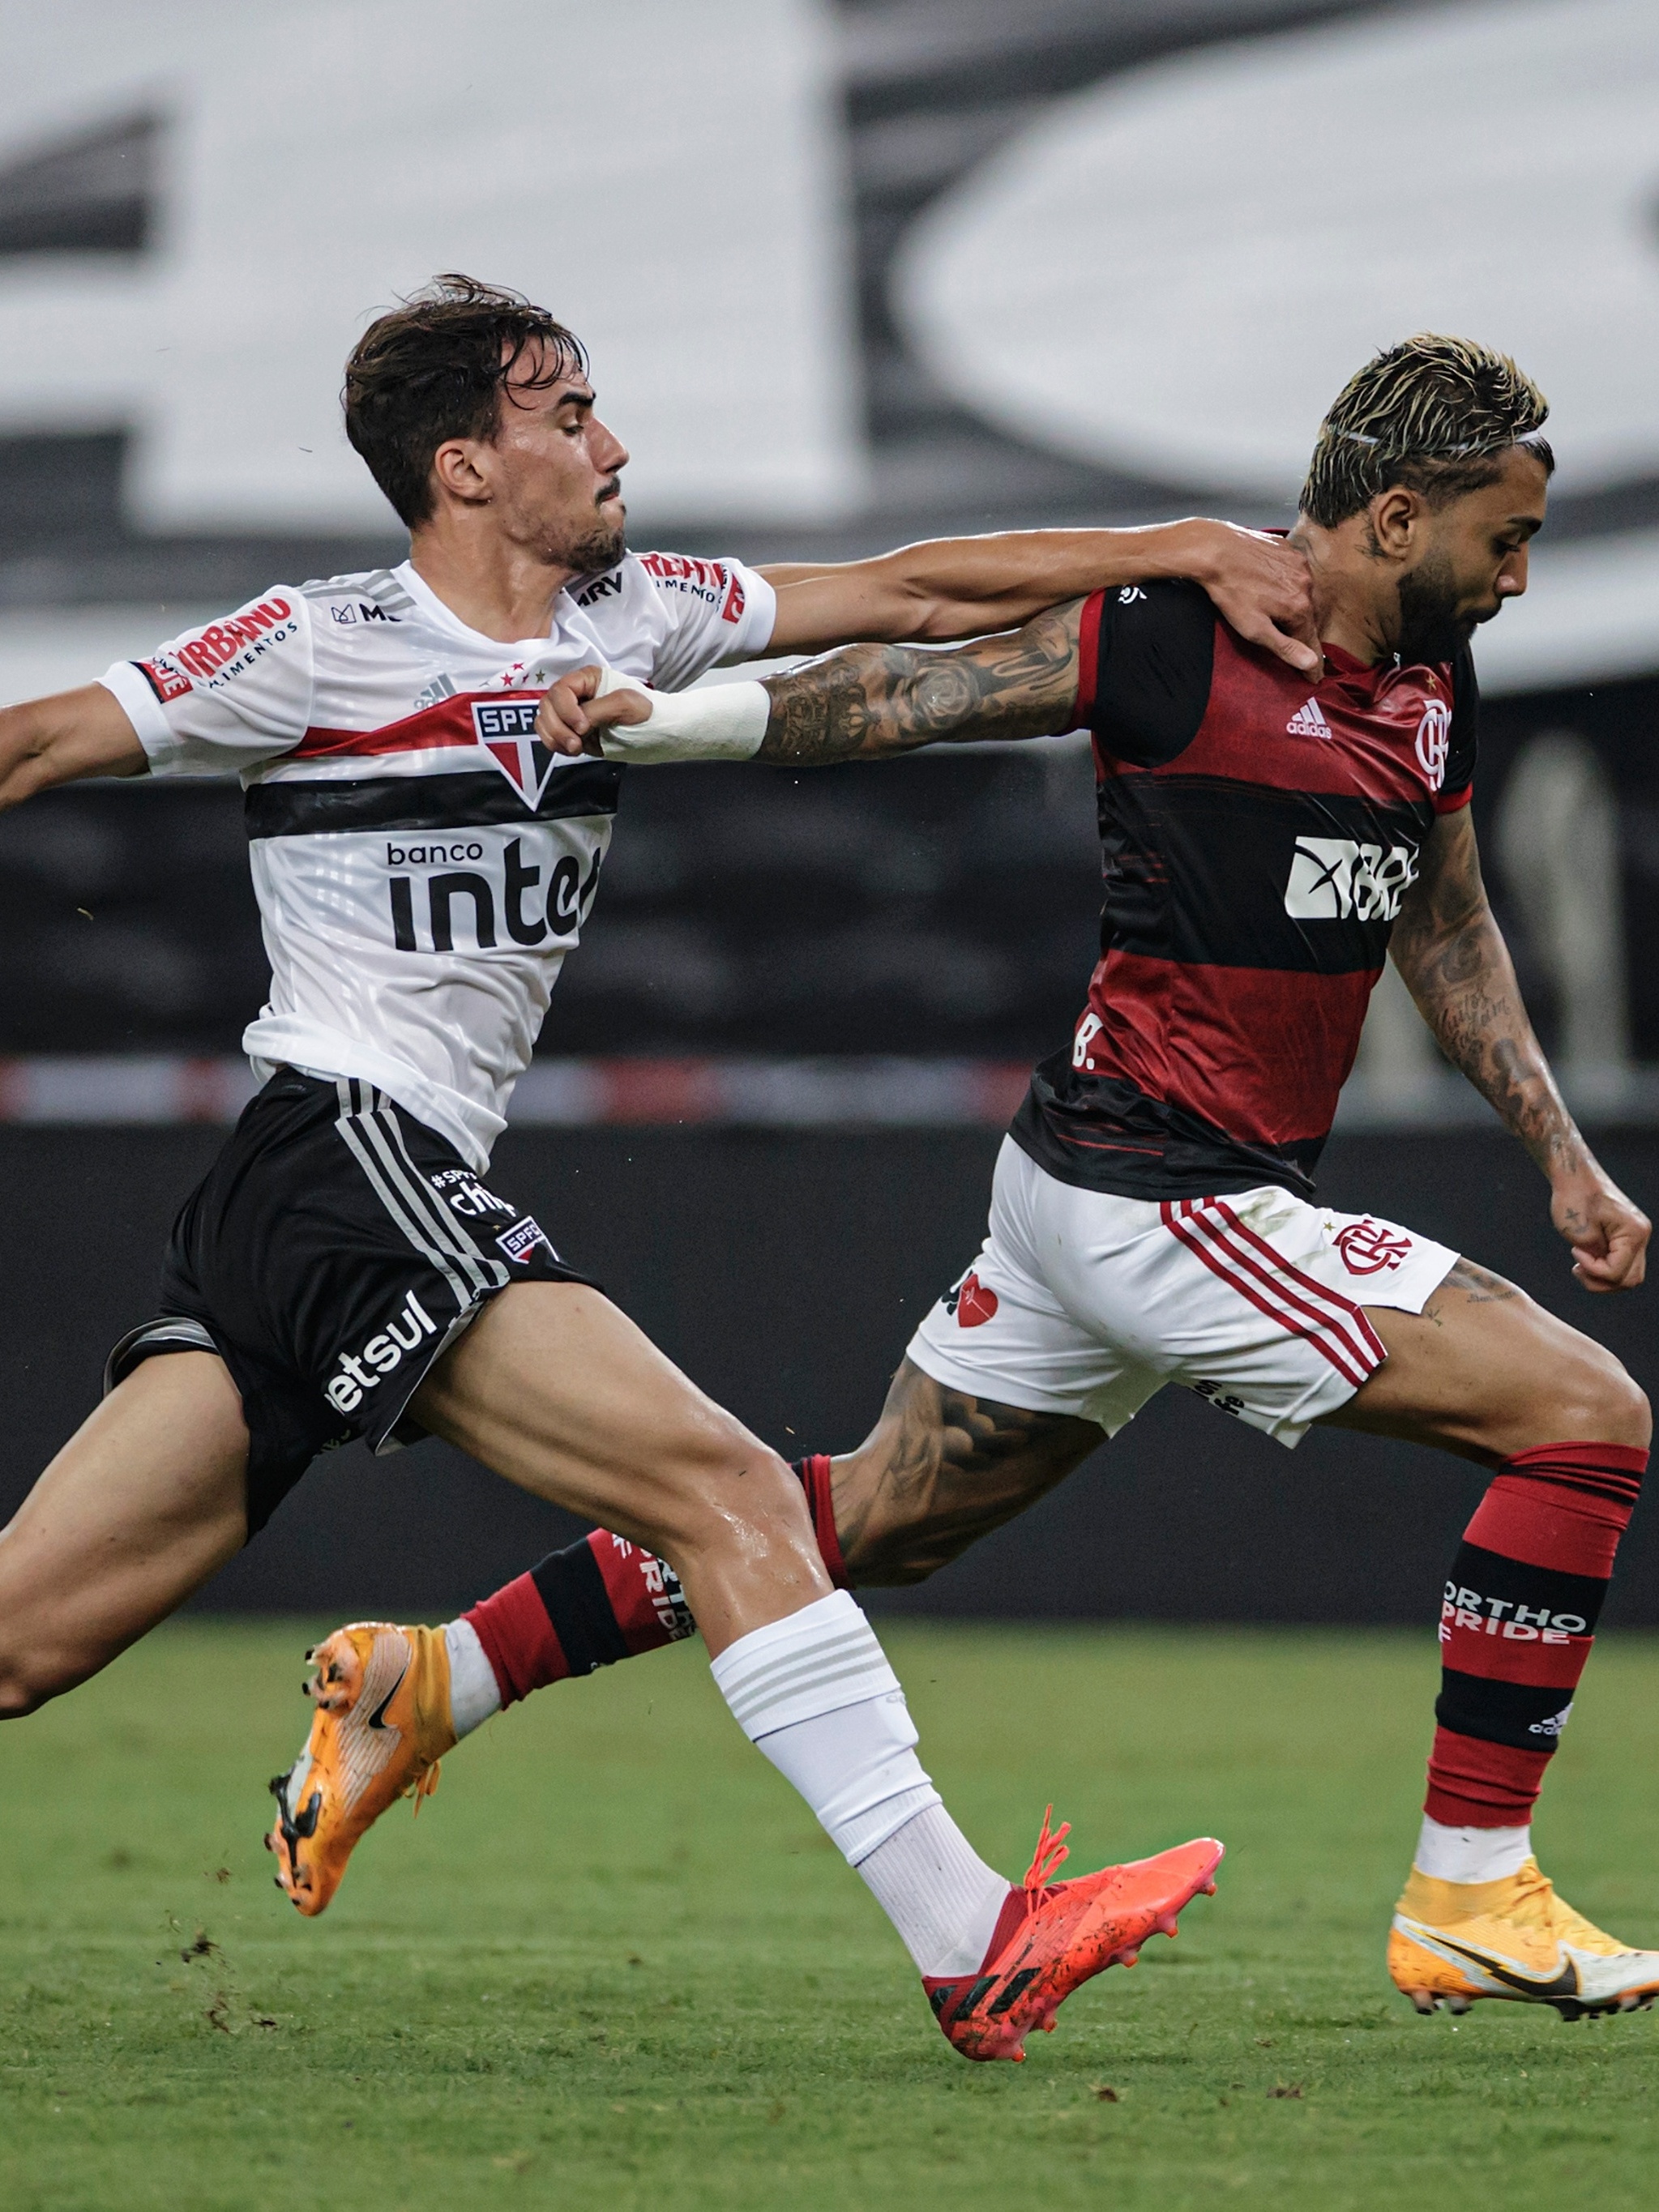 Jogadores revelados por Flamengo e Grêmio são apontados como